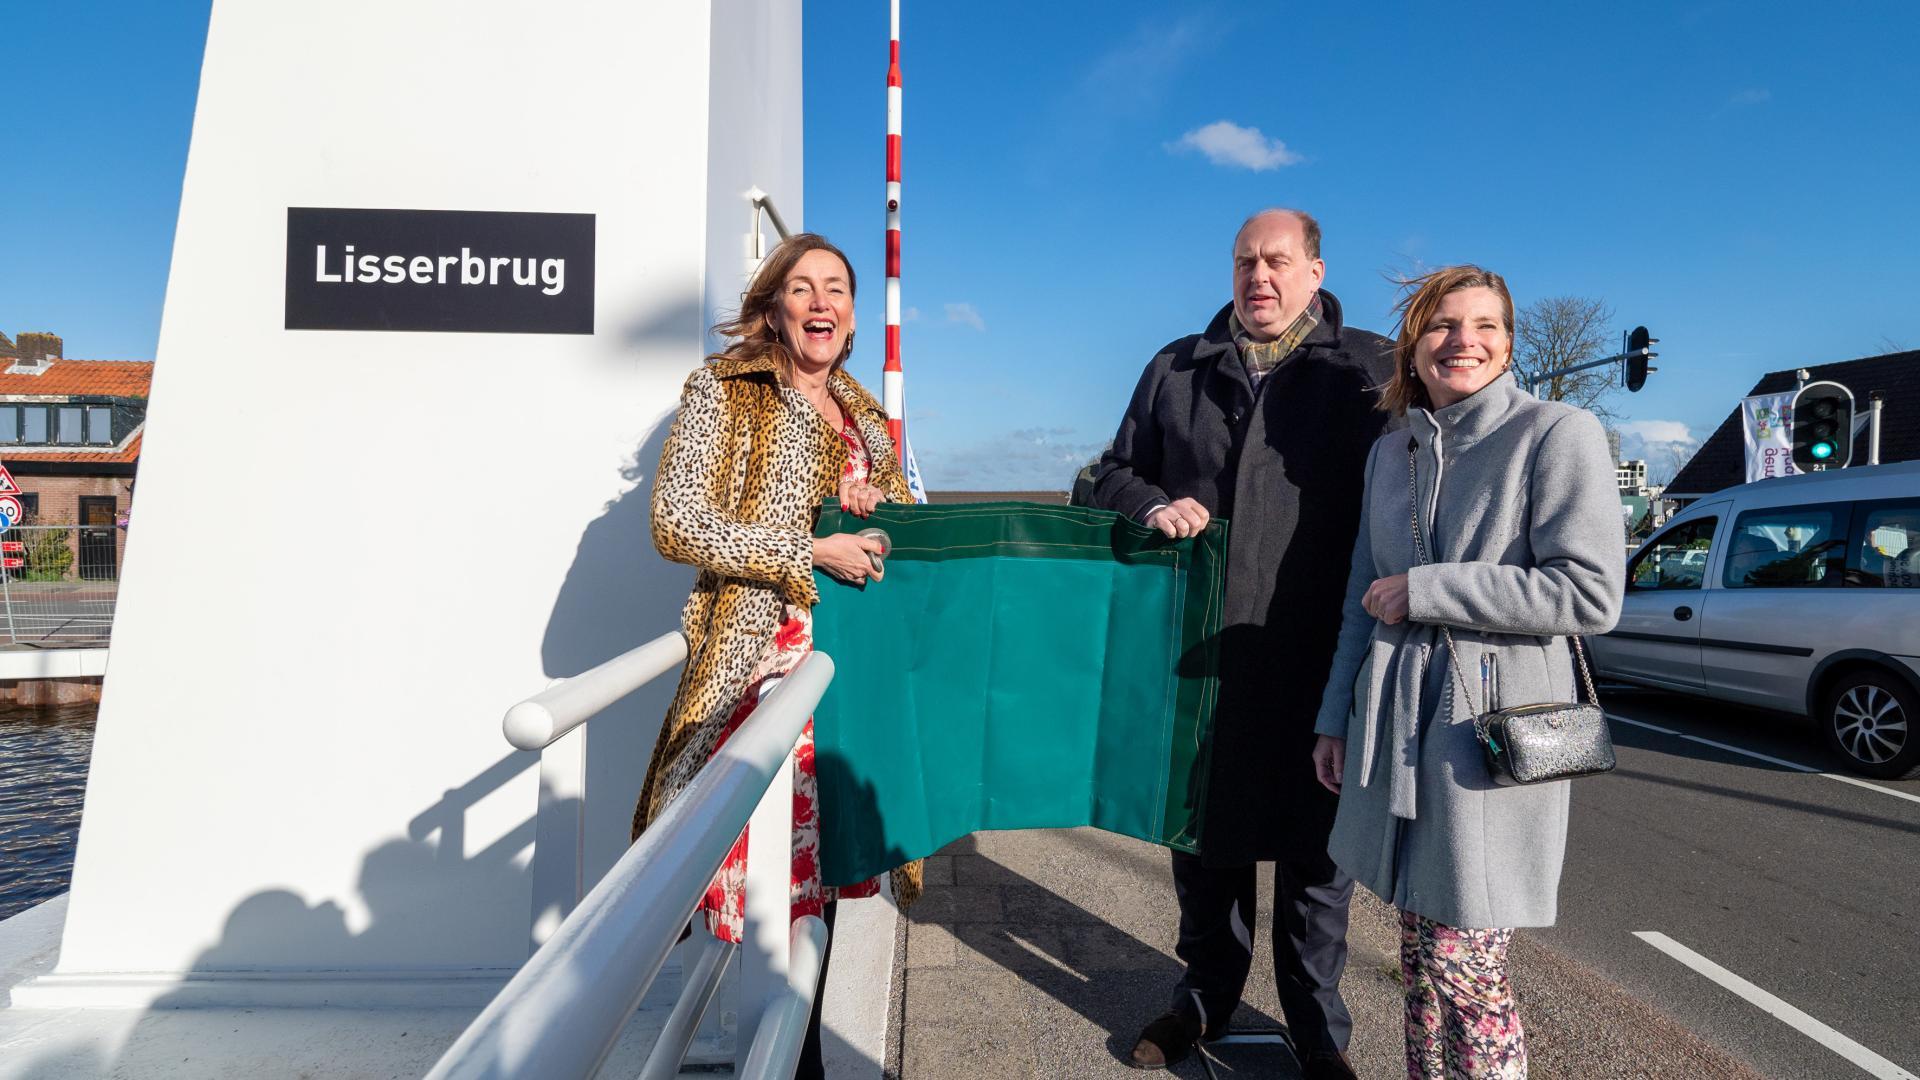 Op vrijdag 24 maart was de officiële heropening van de Lisserbrug